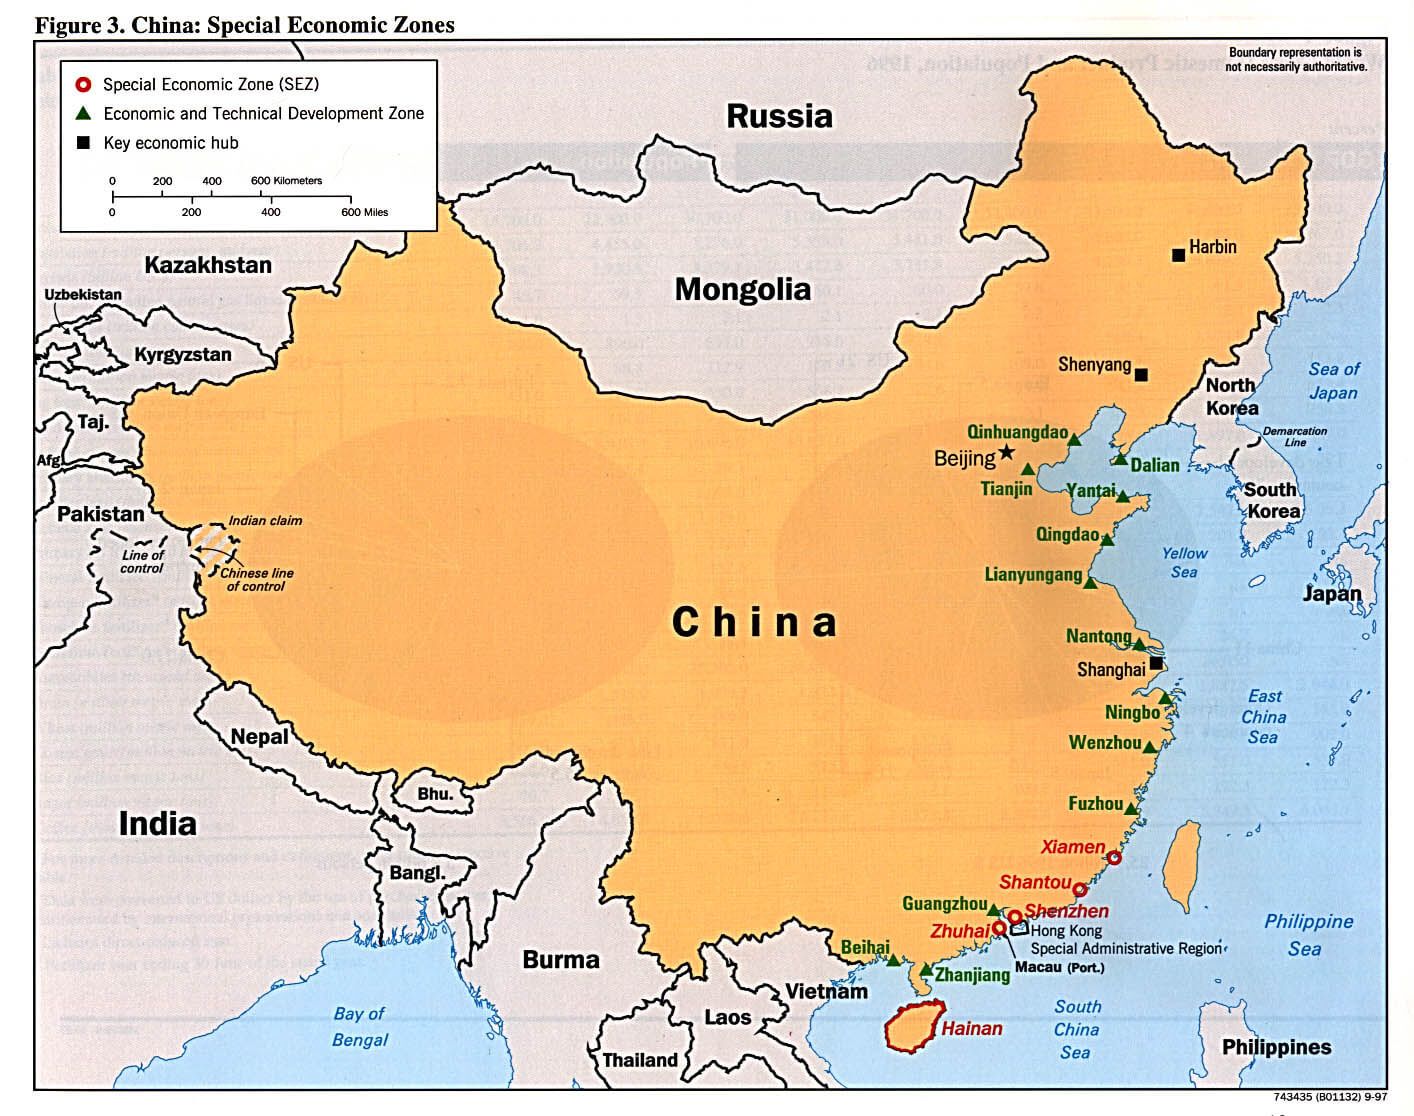 China Special Economic Zones 1997